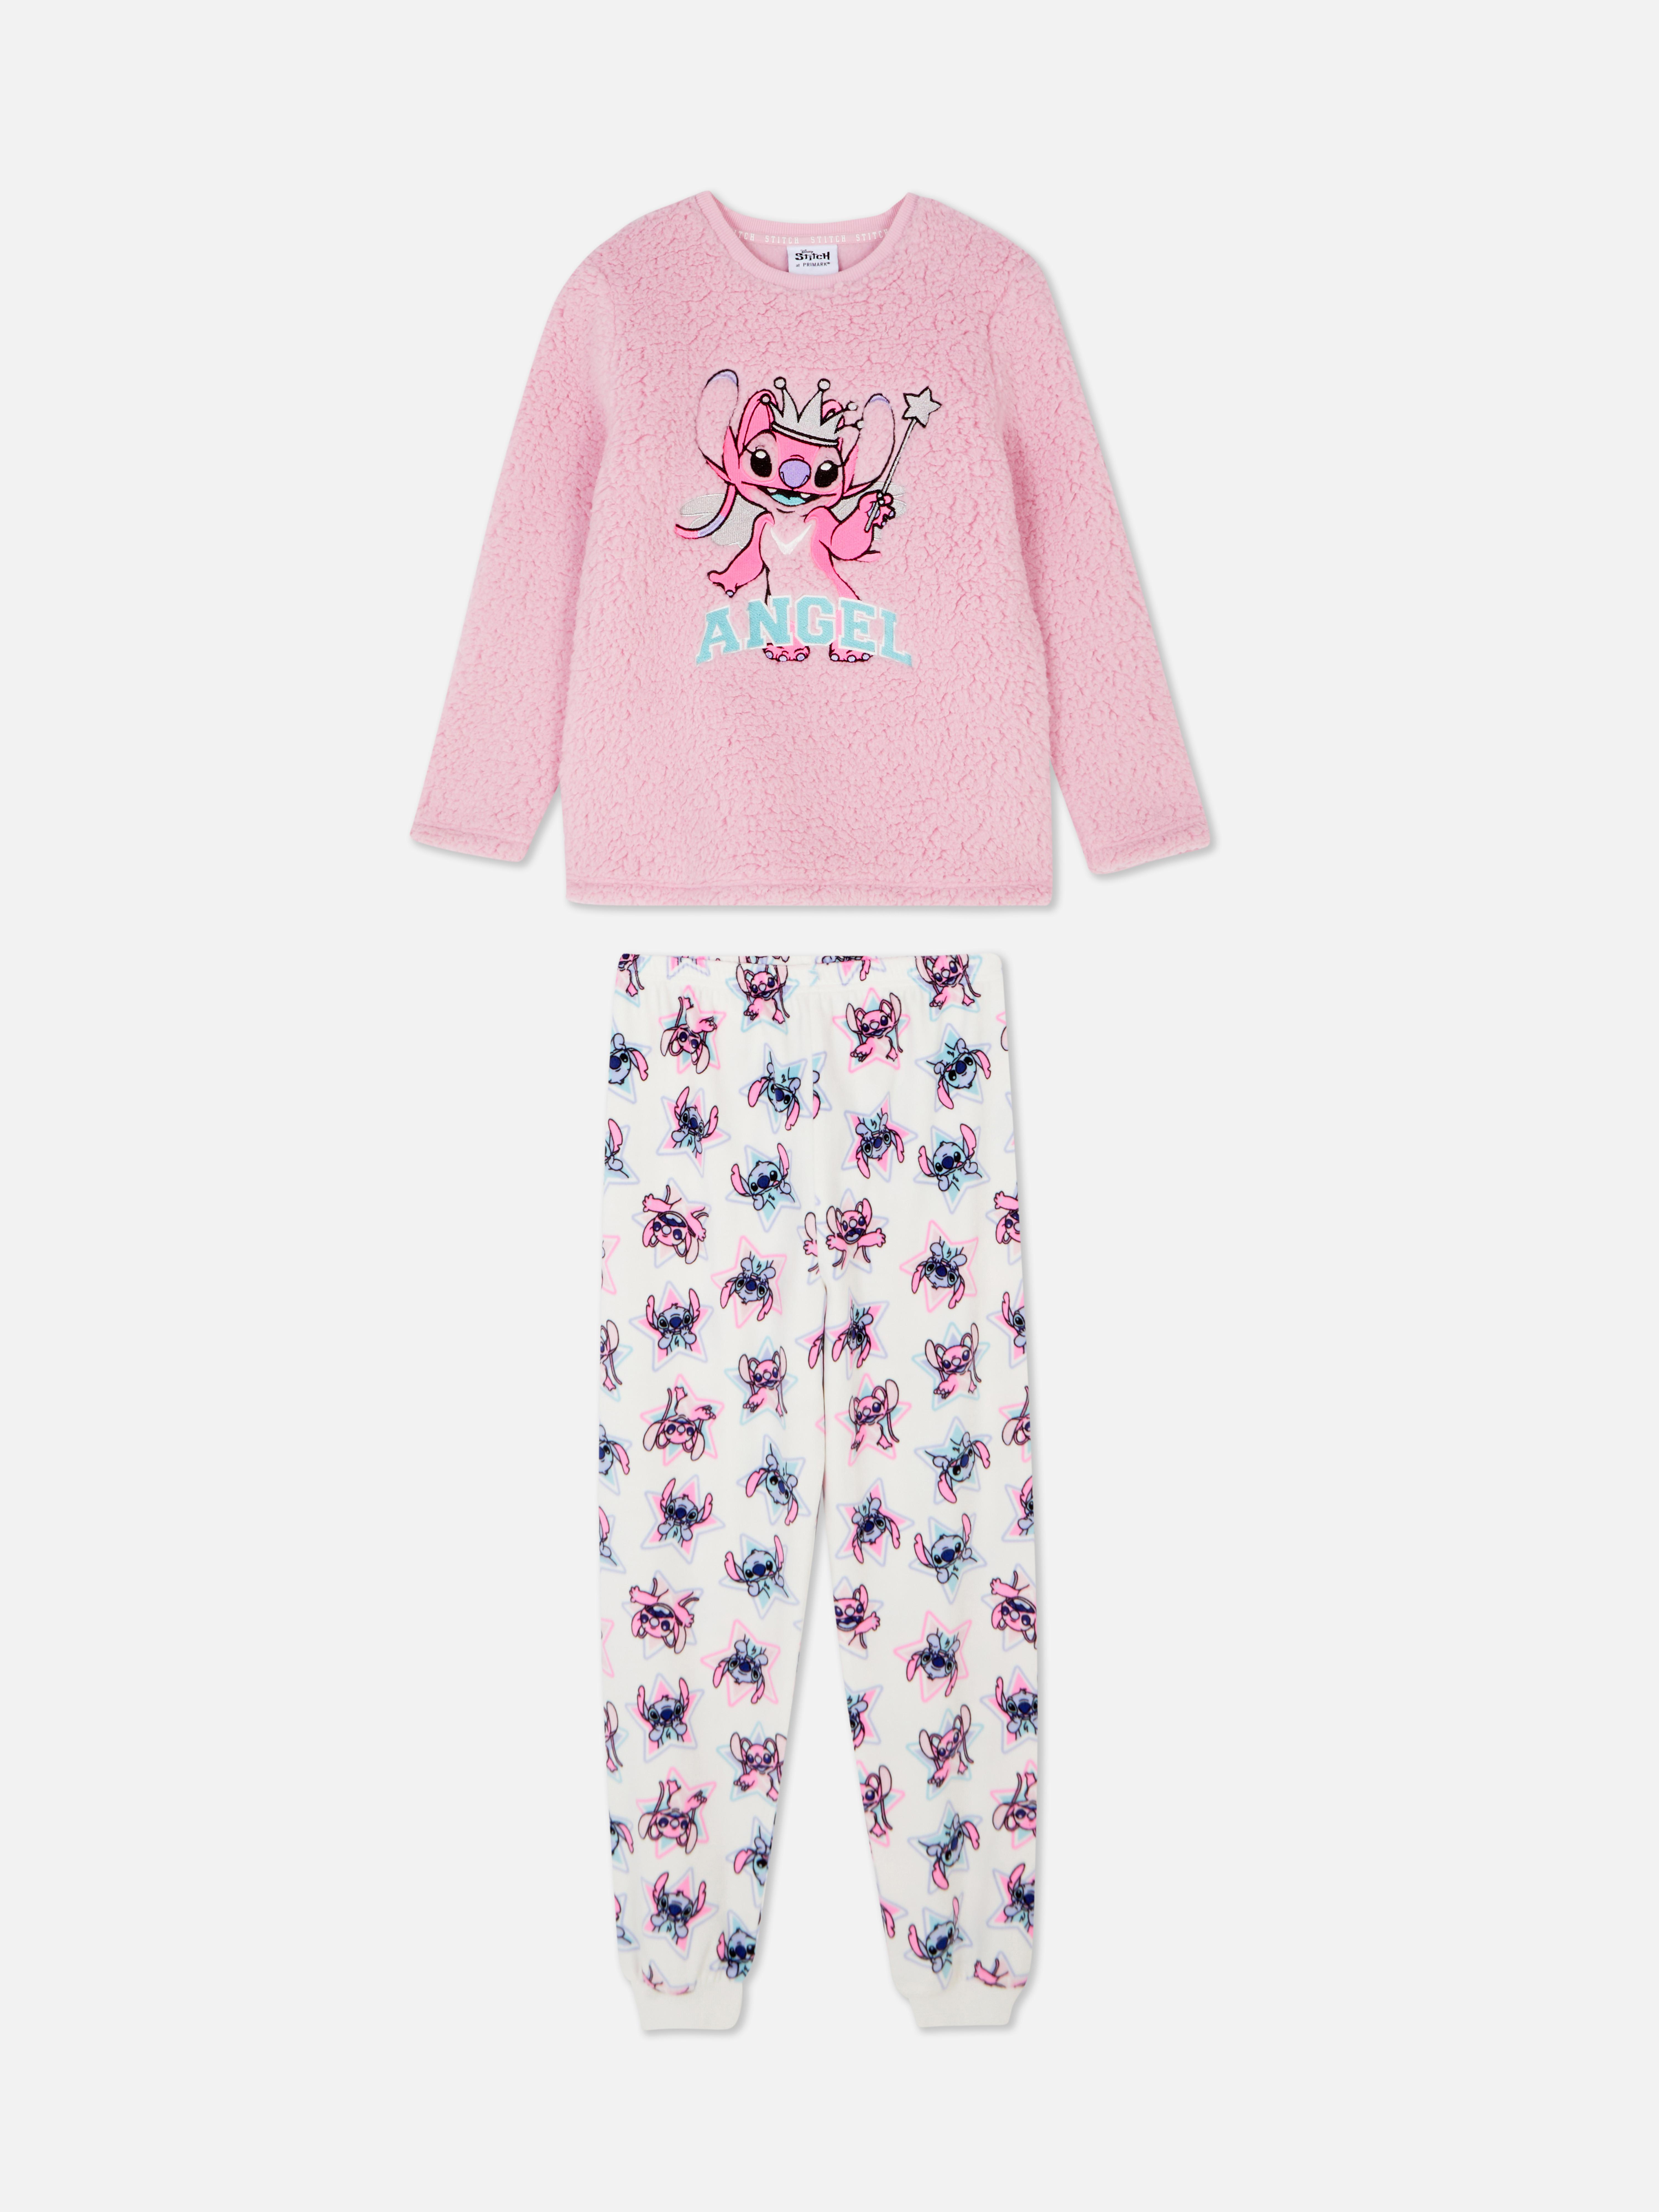 DIsney’s Lilo & Stitch Fleece Pyjamas